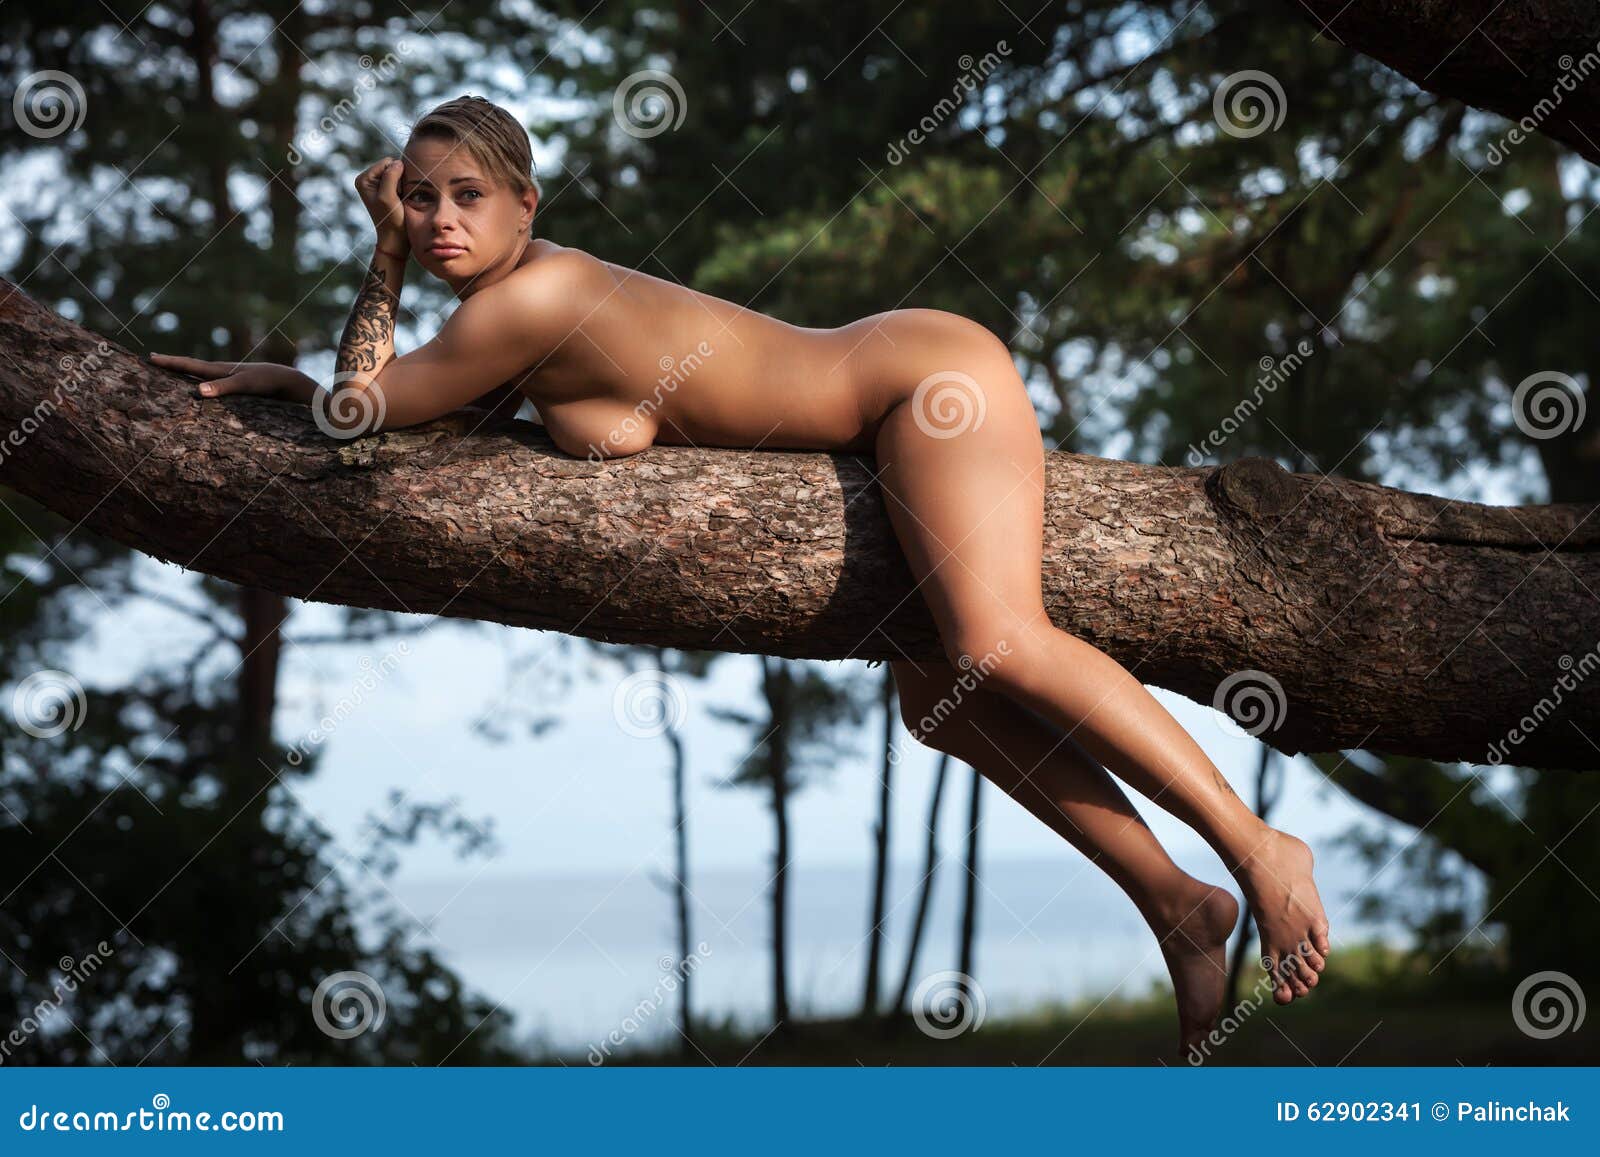 голая тетка у дерева фото 105